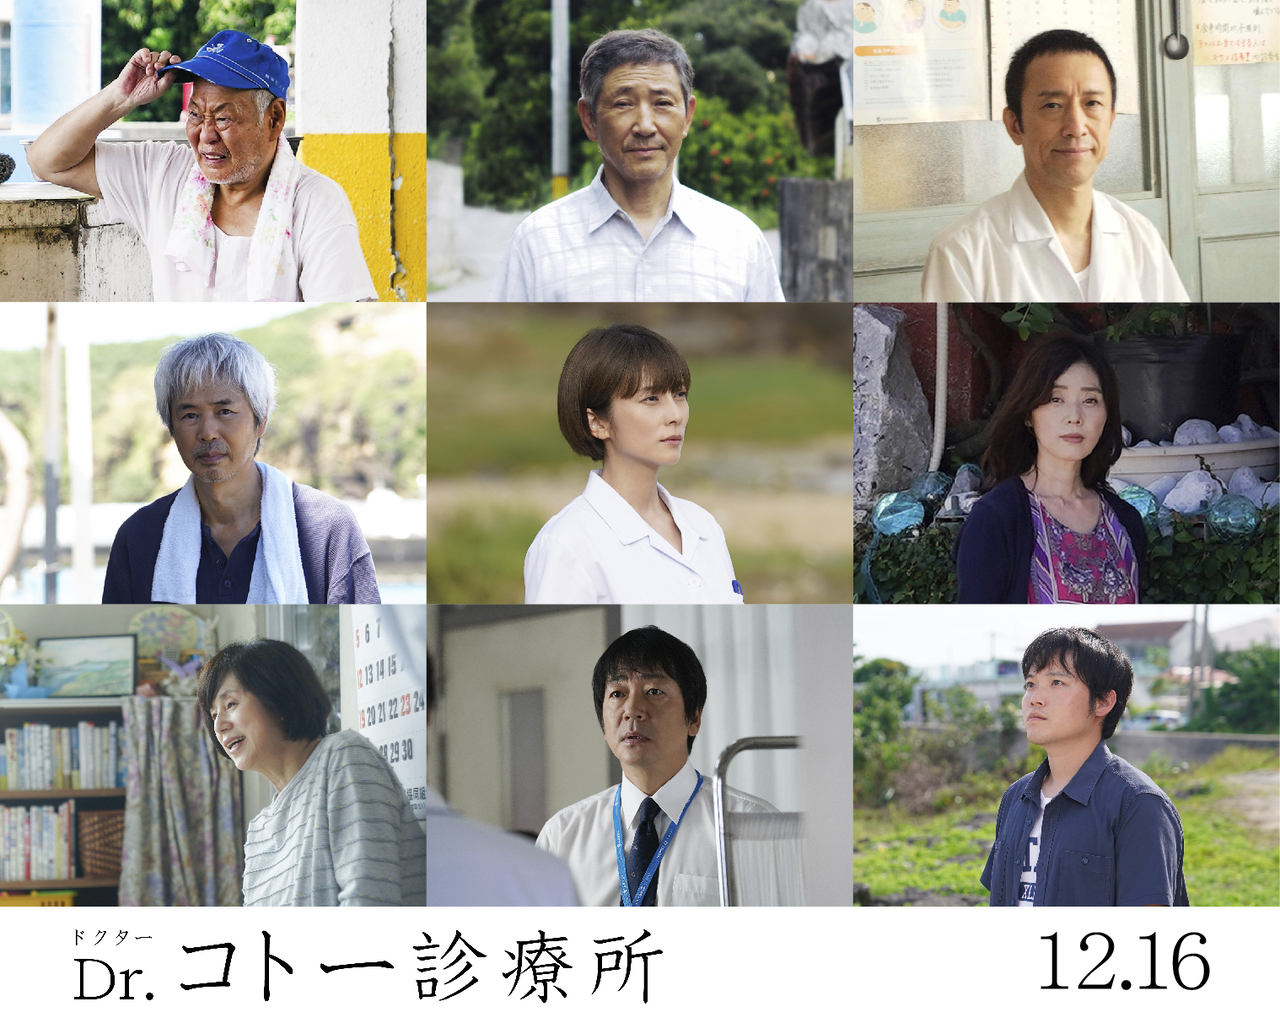 「Dr.コトー診療所」のためだけに役者復帰　剛洋役・富岡涼の出演発表に反響